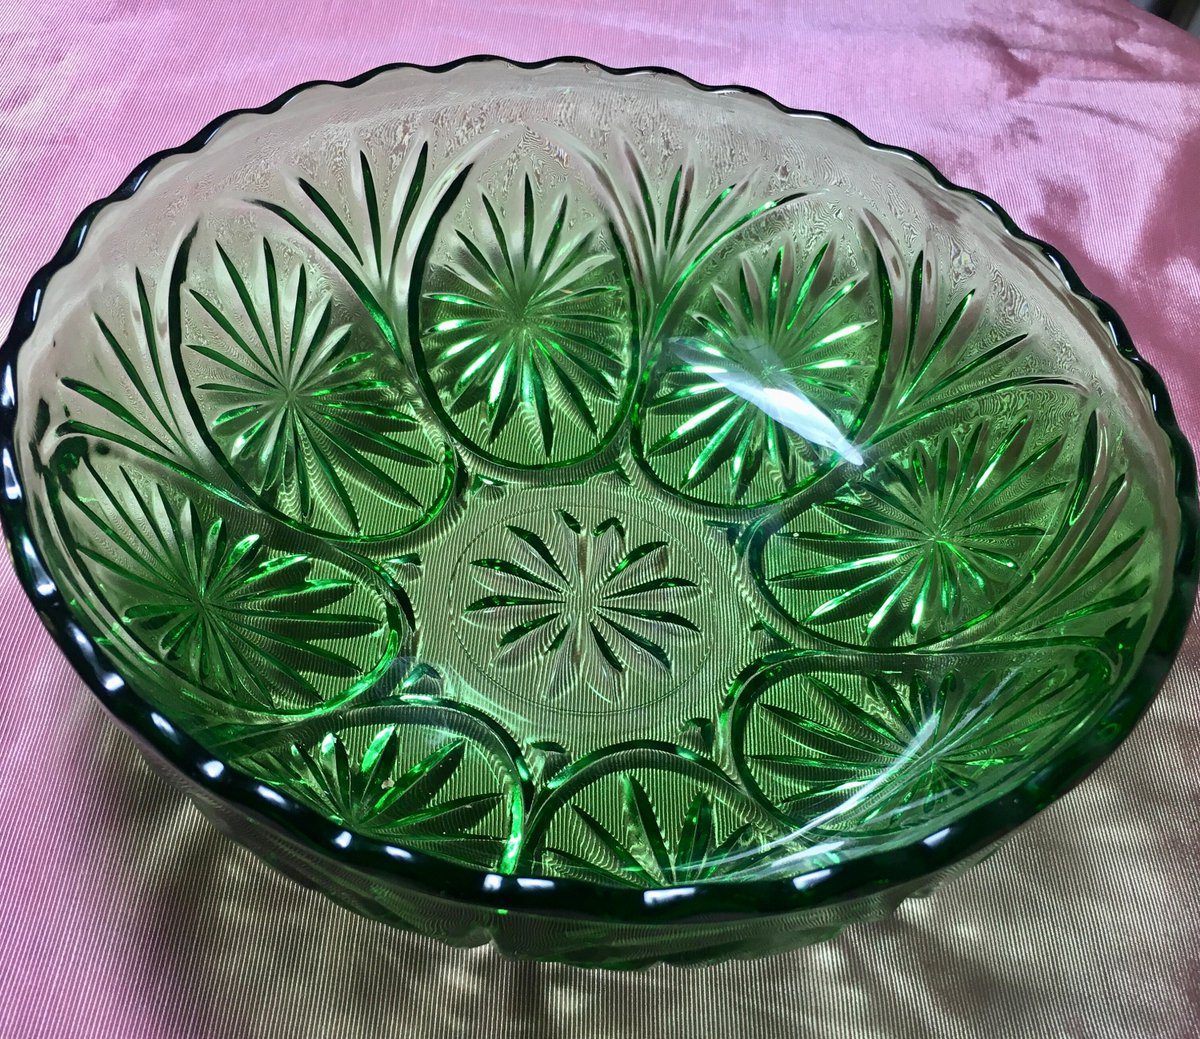 Green Depression Glass Bowl, Scalloped Rim Bowl, Starburst Design. Vintage 8 inch Serving Bowl tuppu.net/ee62192f #AntiquesAtlanta #Etsy #vintage #ServingBowl